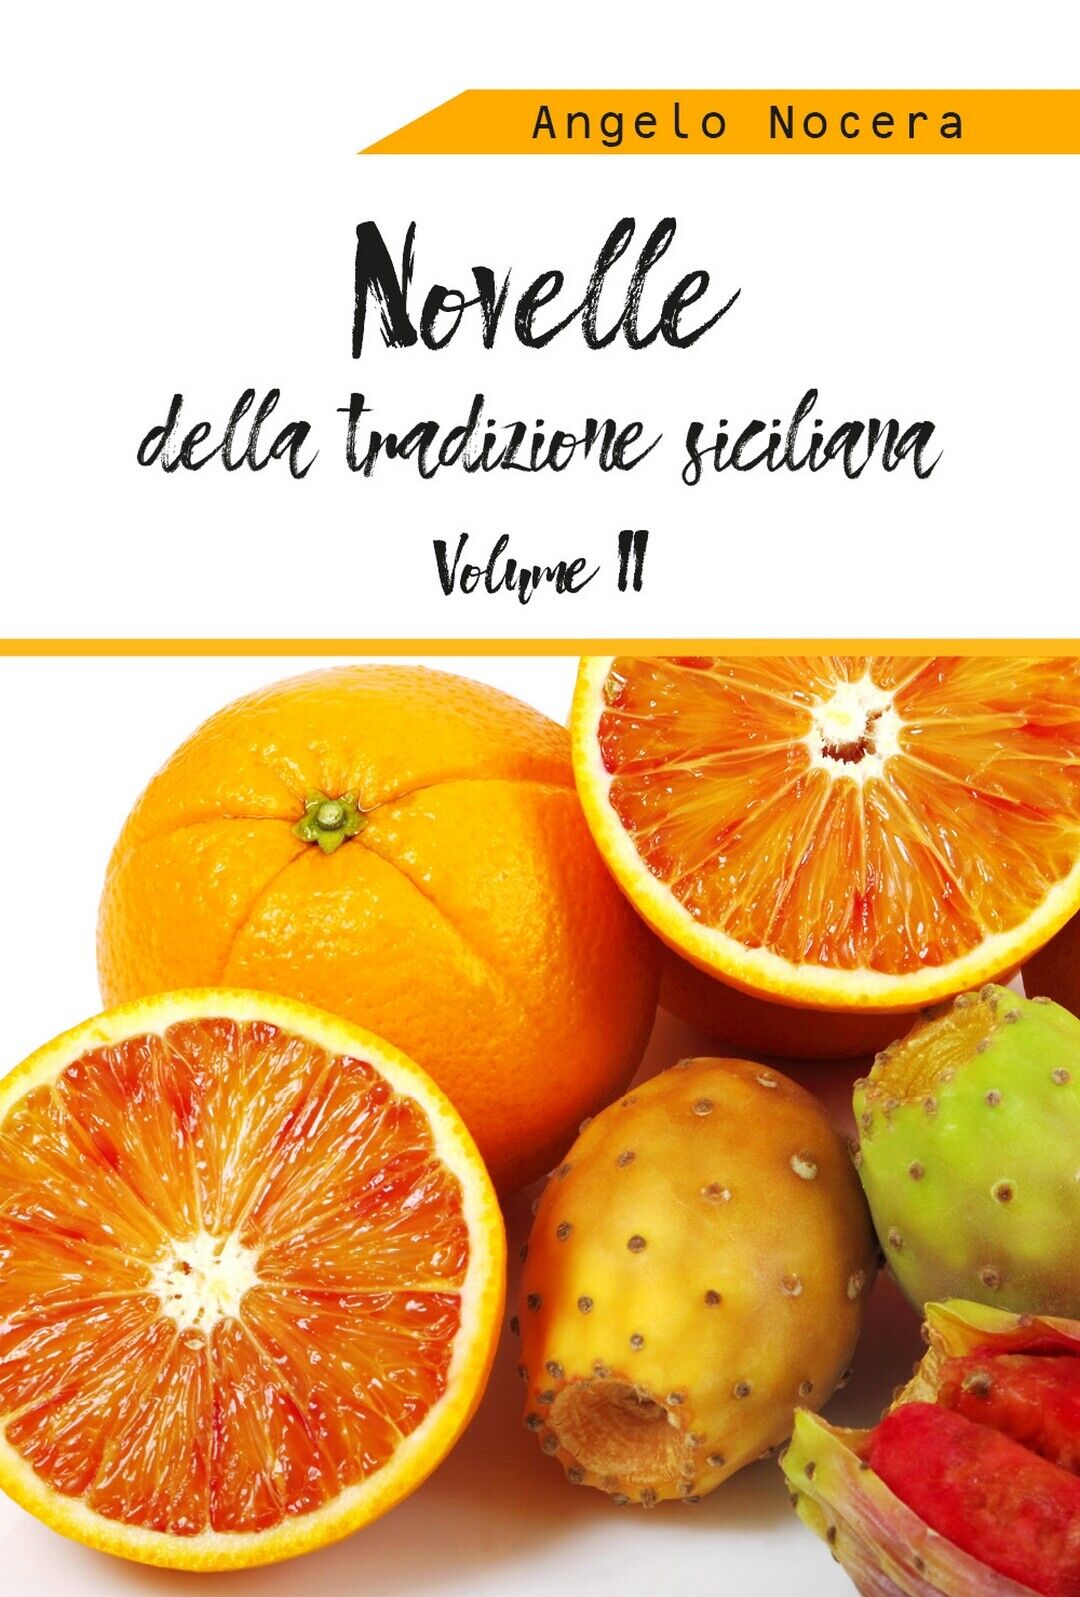 Novelle della tradizione siciliana. II volume, Angelo Nocera,  2019,  Youcanprin libro usato